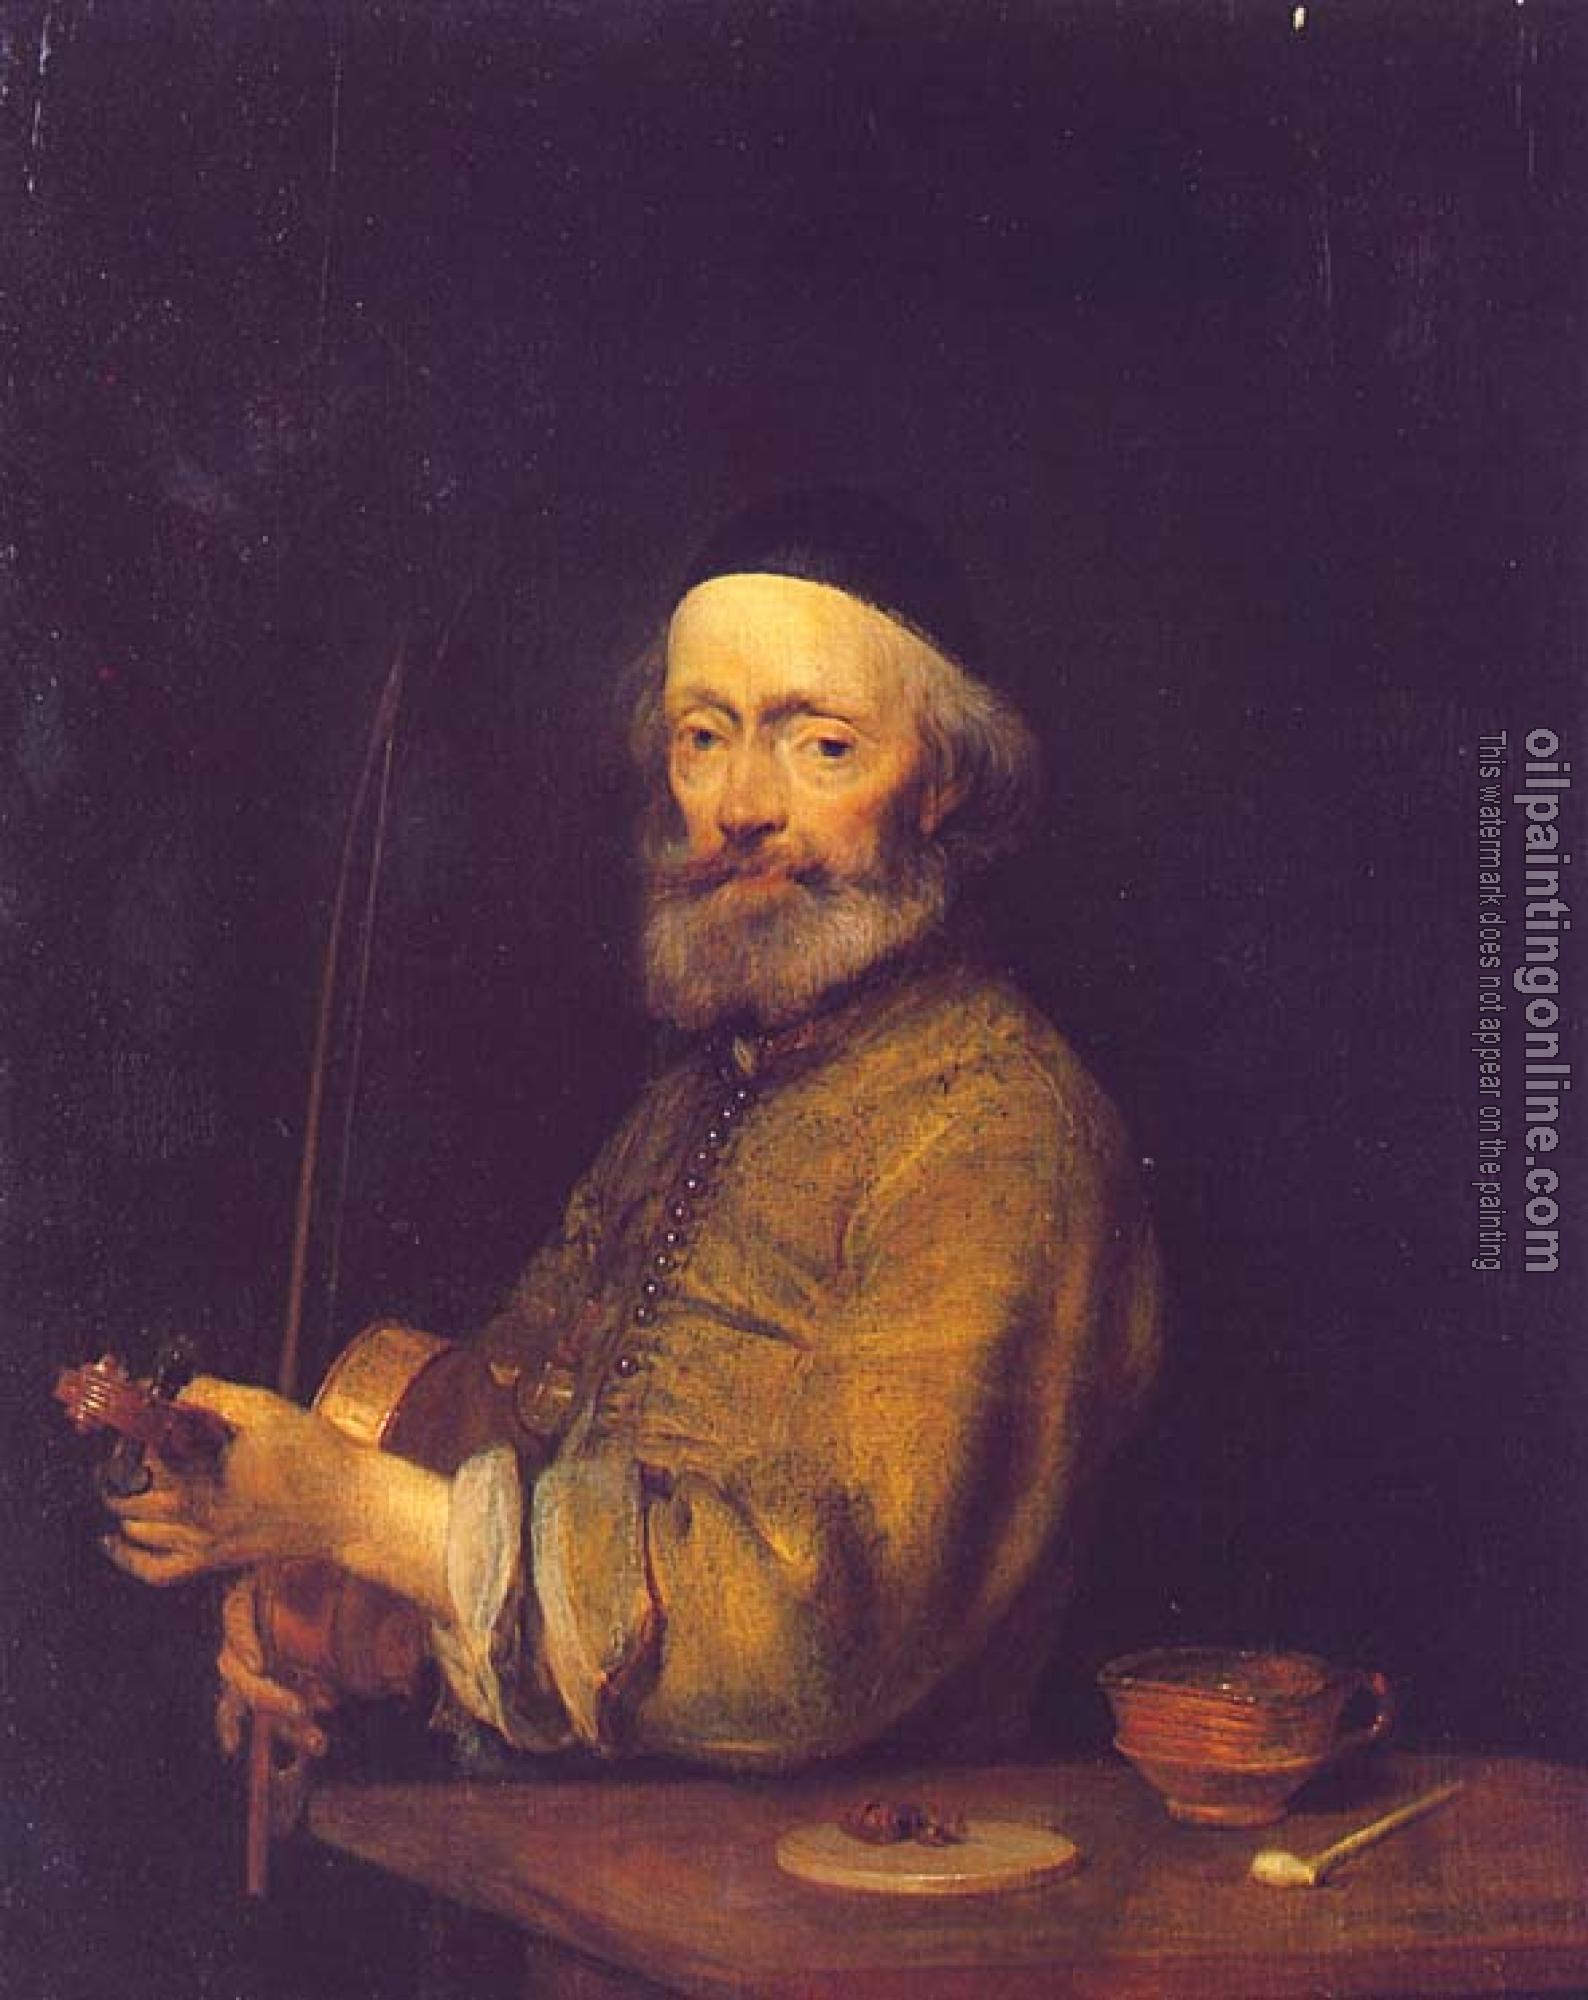 Borch, Gerard Ter - A Violinist